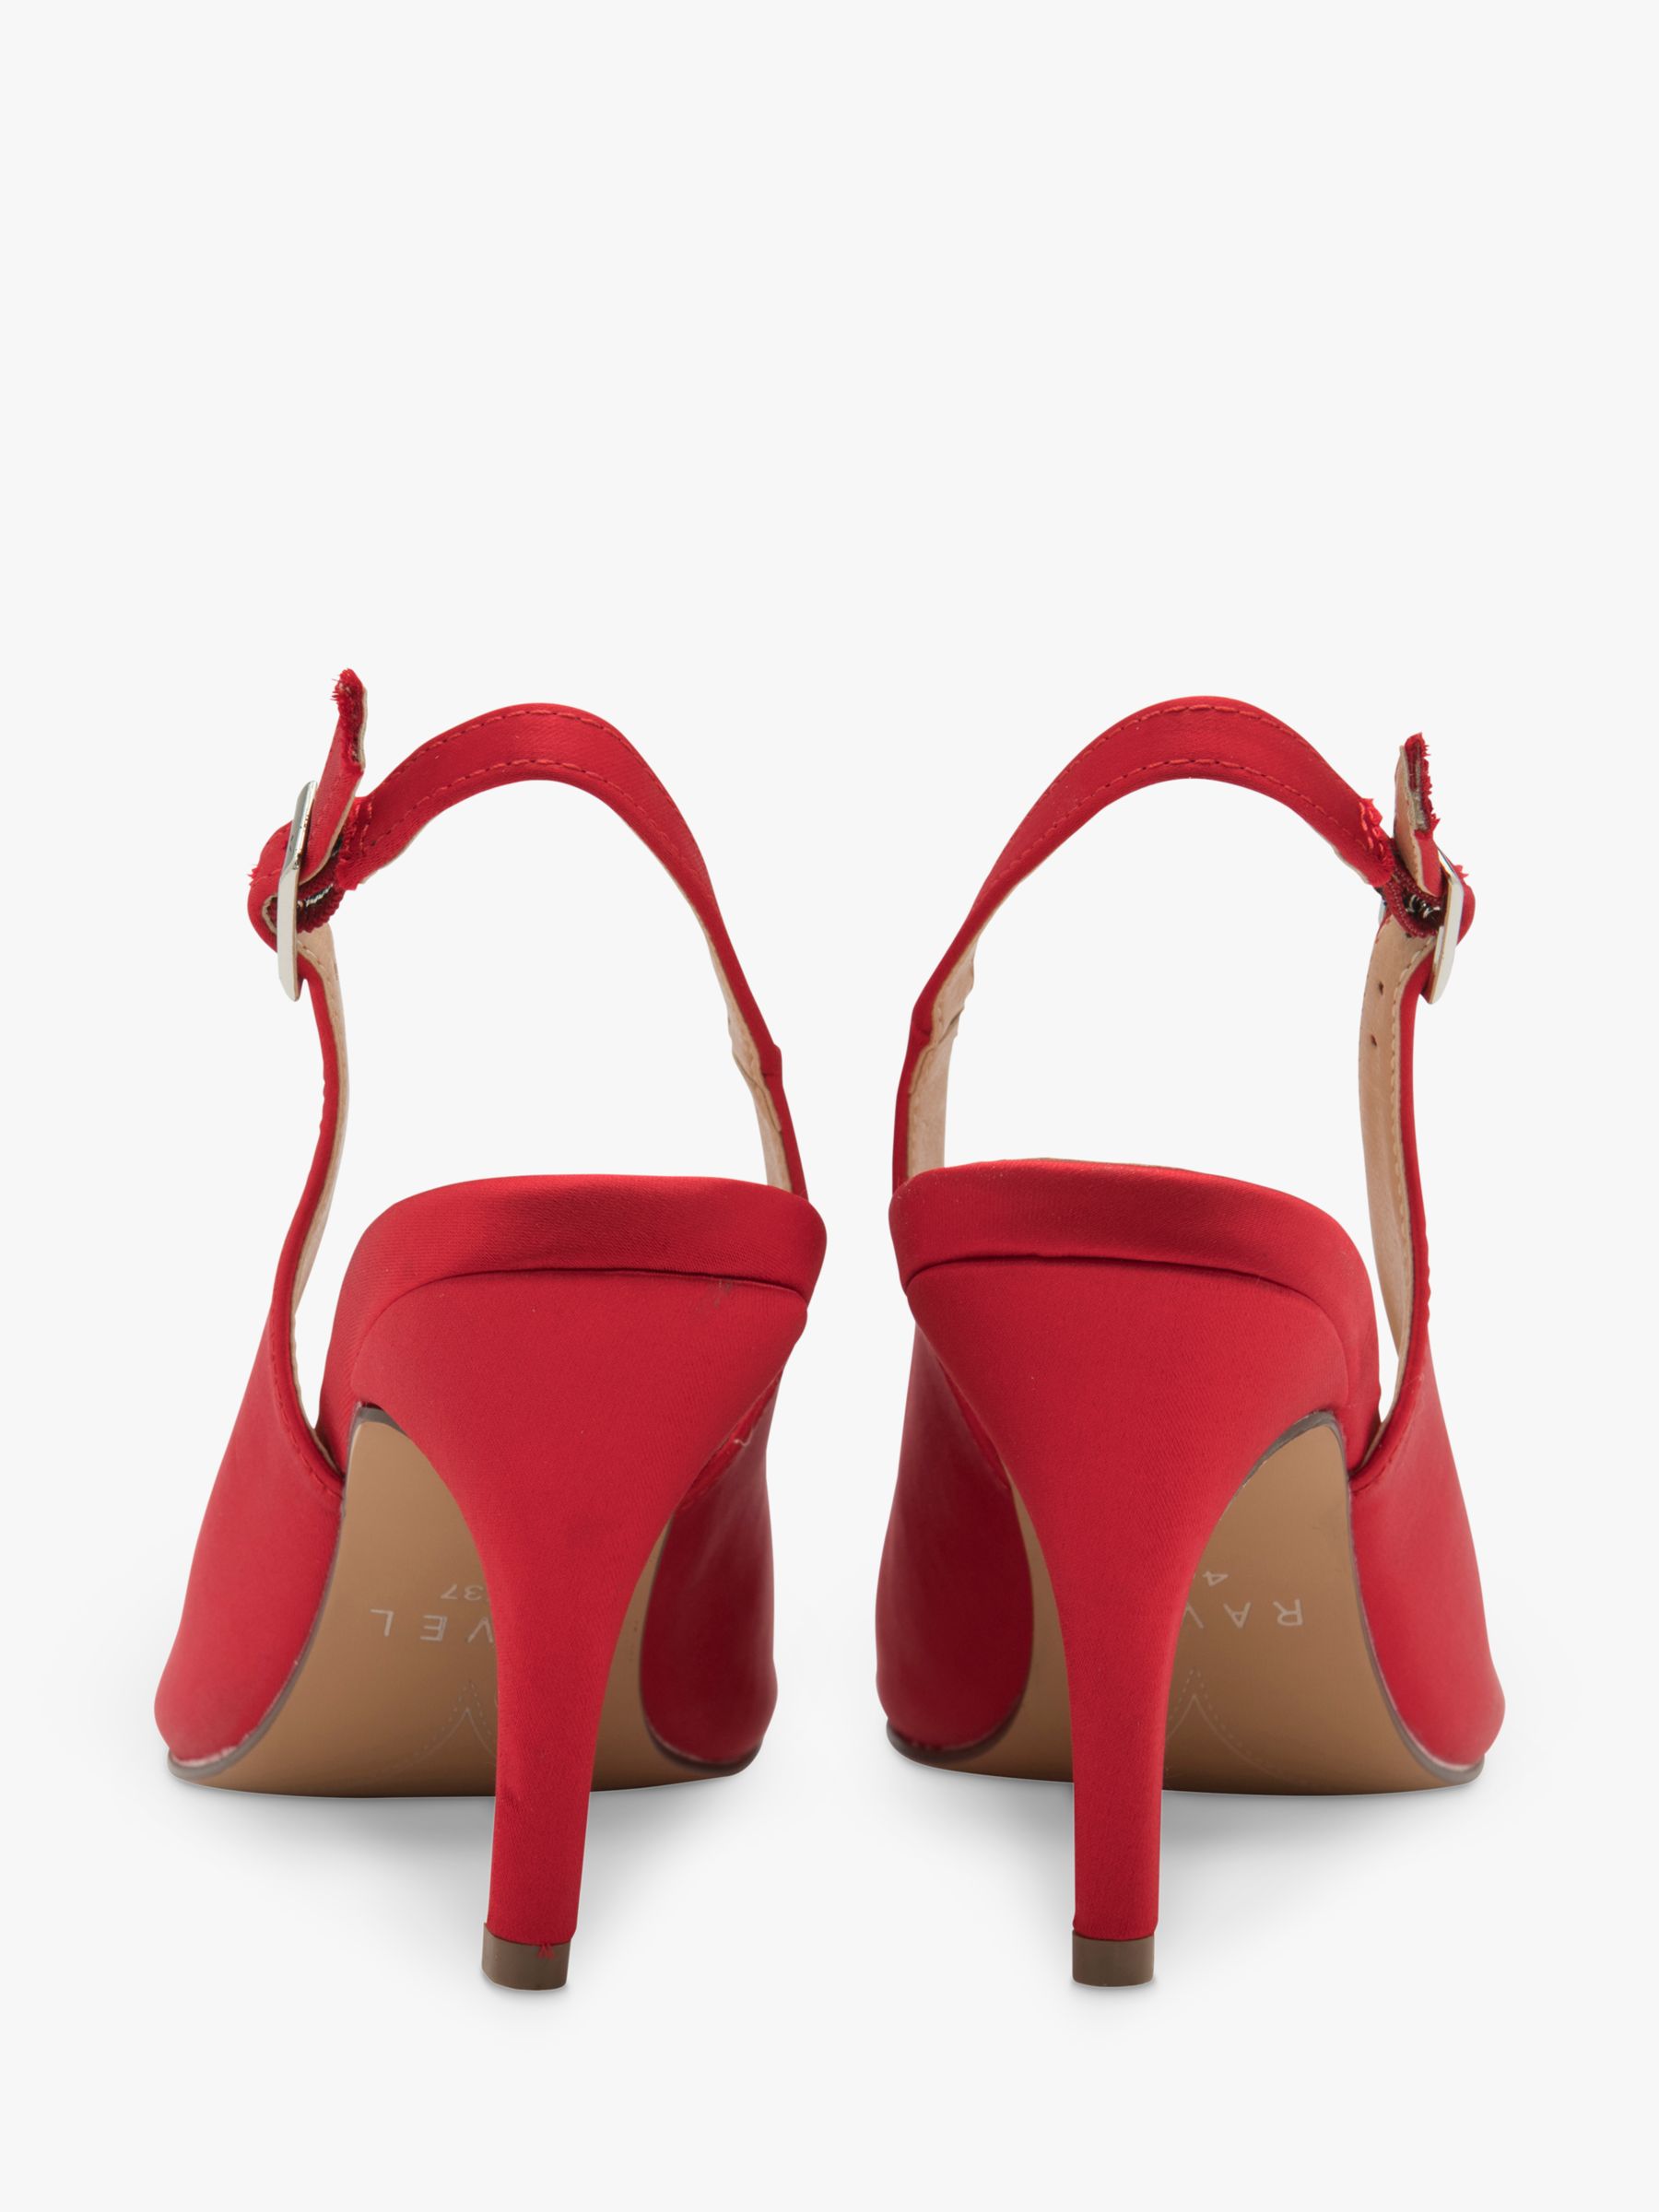 Ravel Kavan Satin Stiletto Heel Slingback Court Shoes, Red, 7